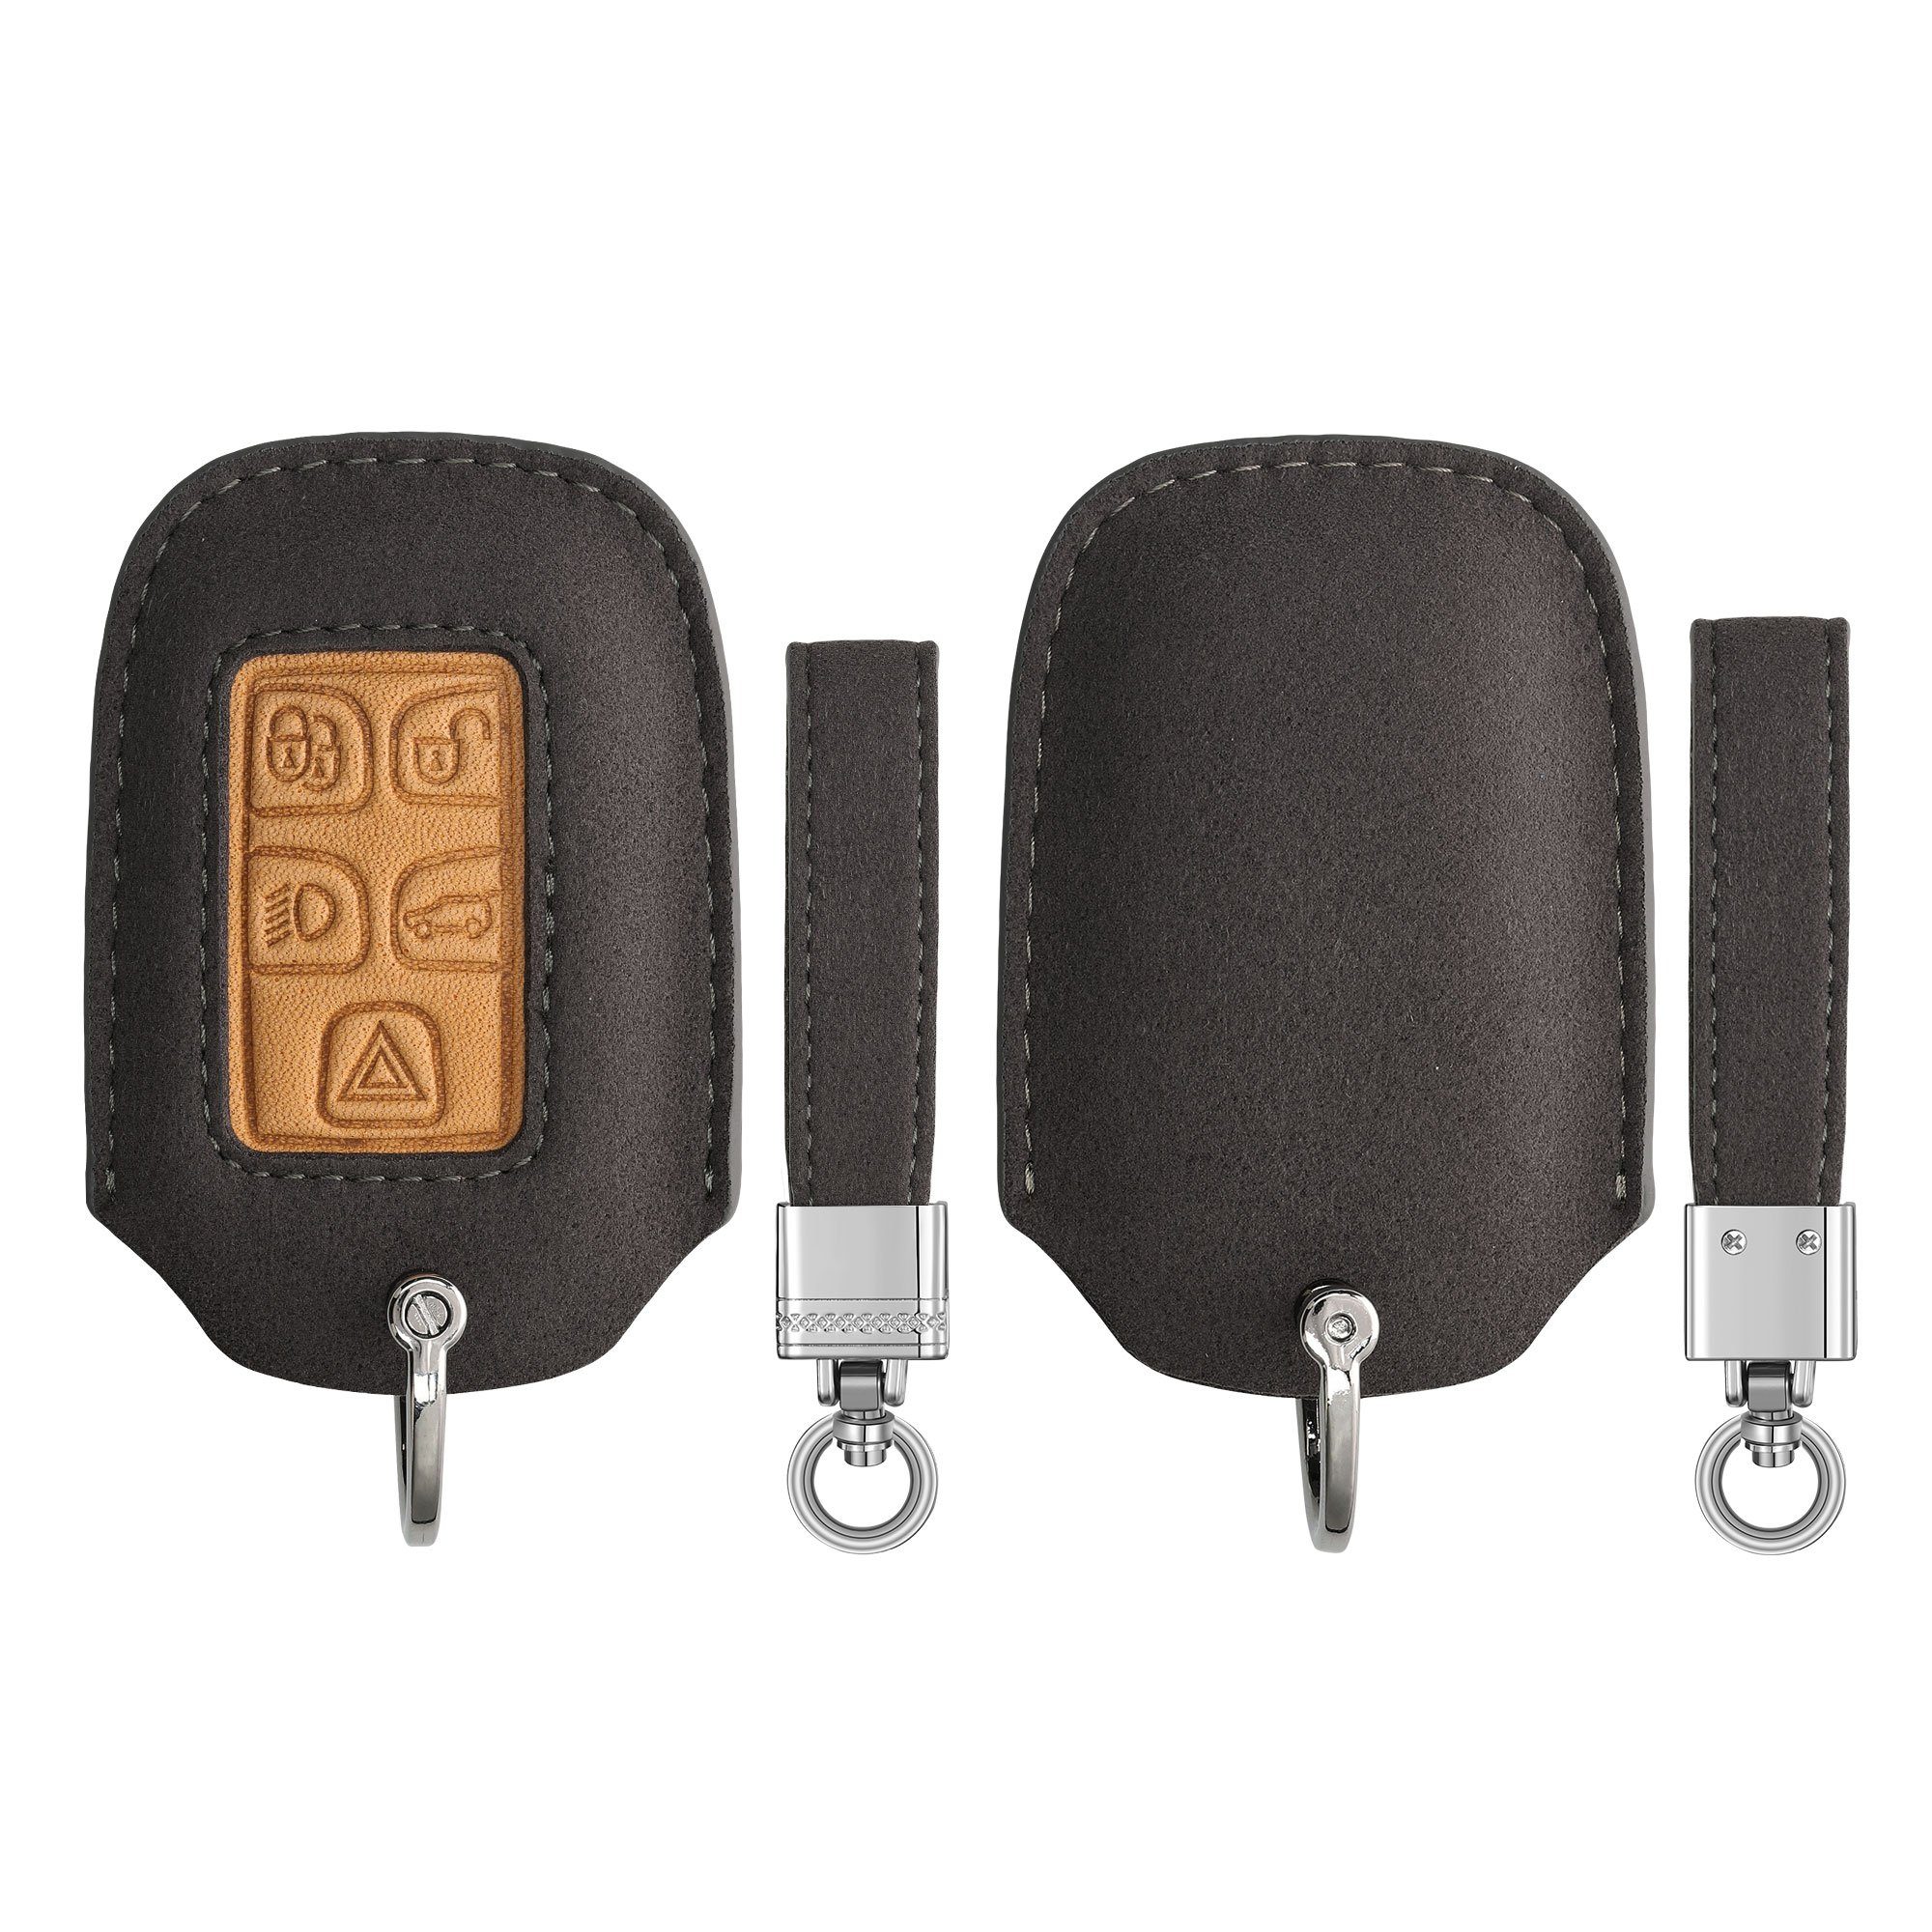 für Schlüssel Schlüsseltasche Schlüsselhülle Cover Autoschlüssel in Land kwmobile Case Hülle - Kunstleder Rover Jaguar, Grau Braun